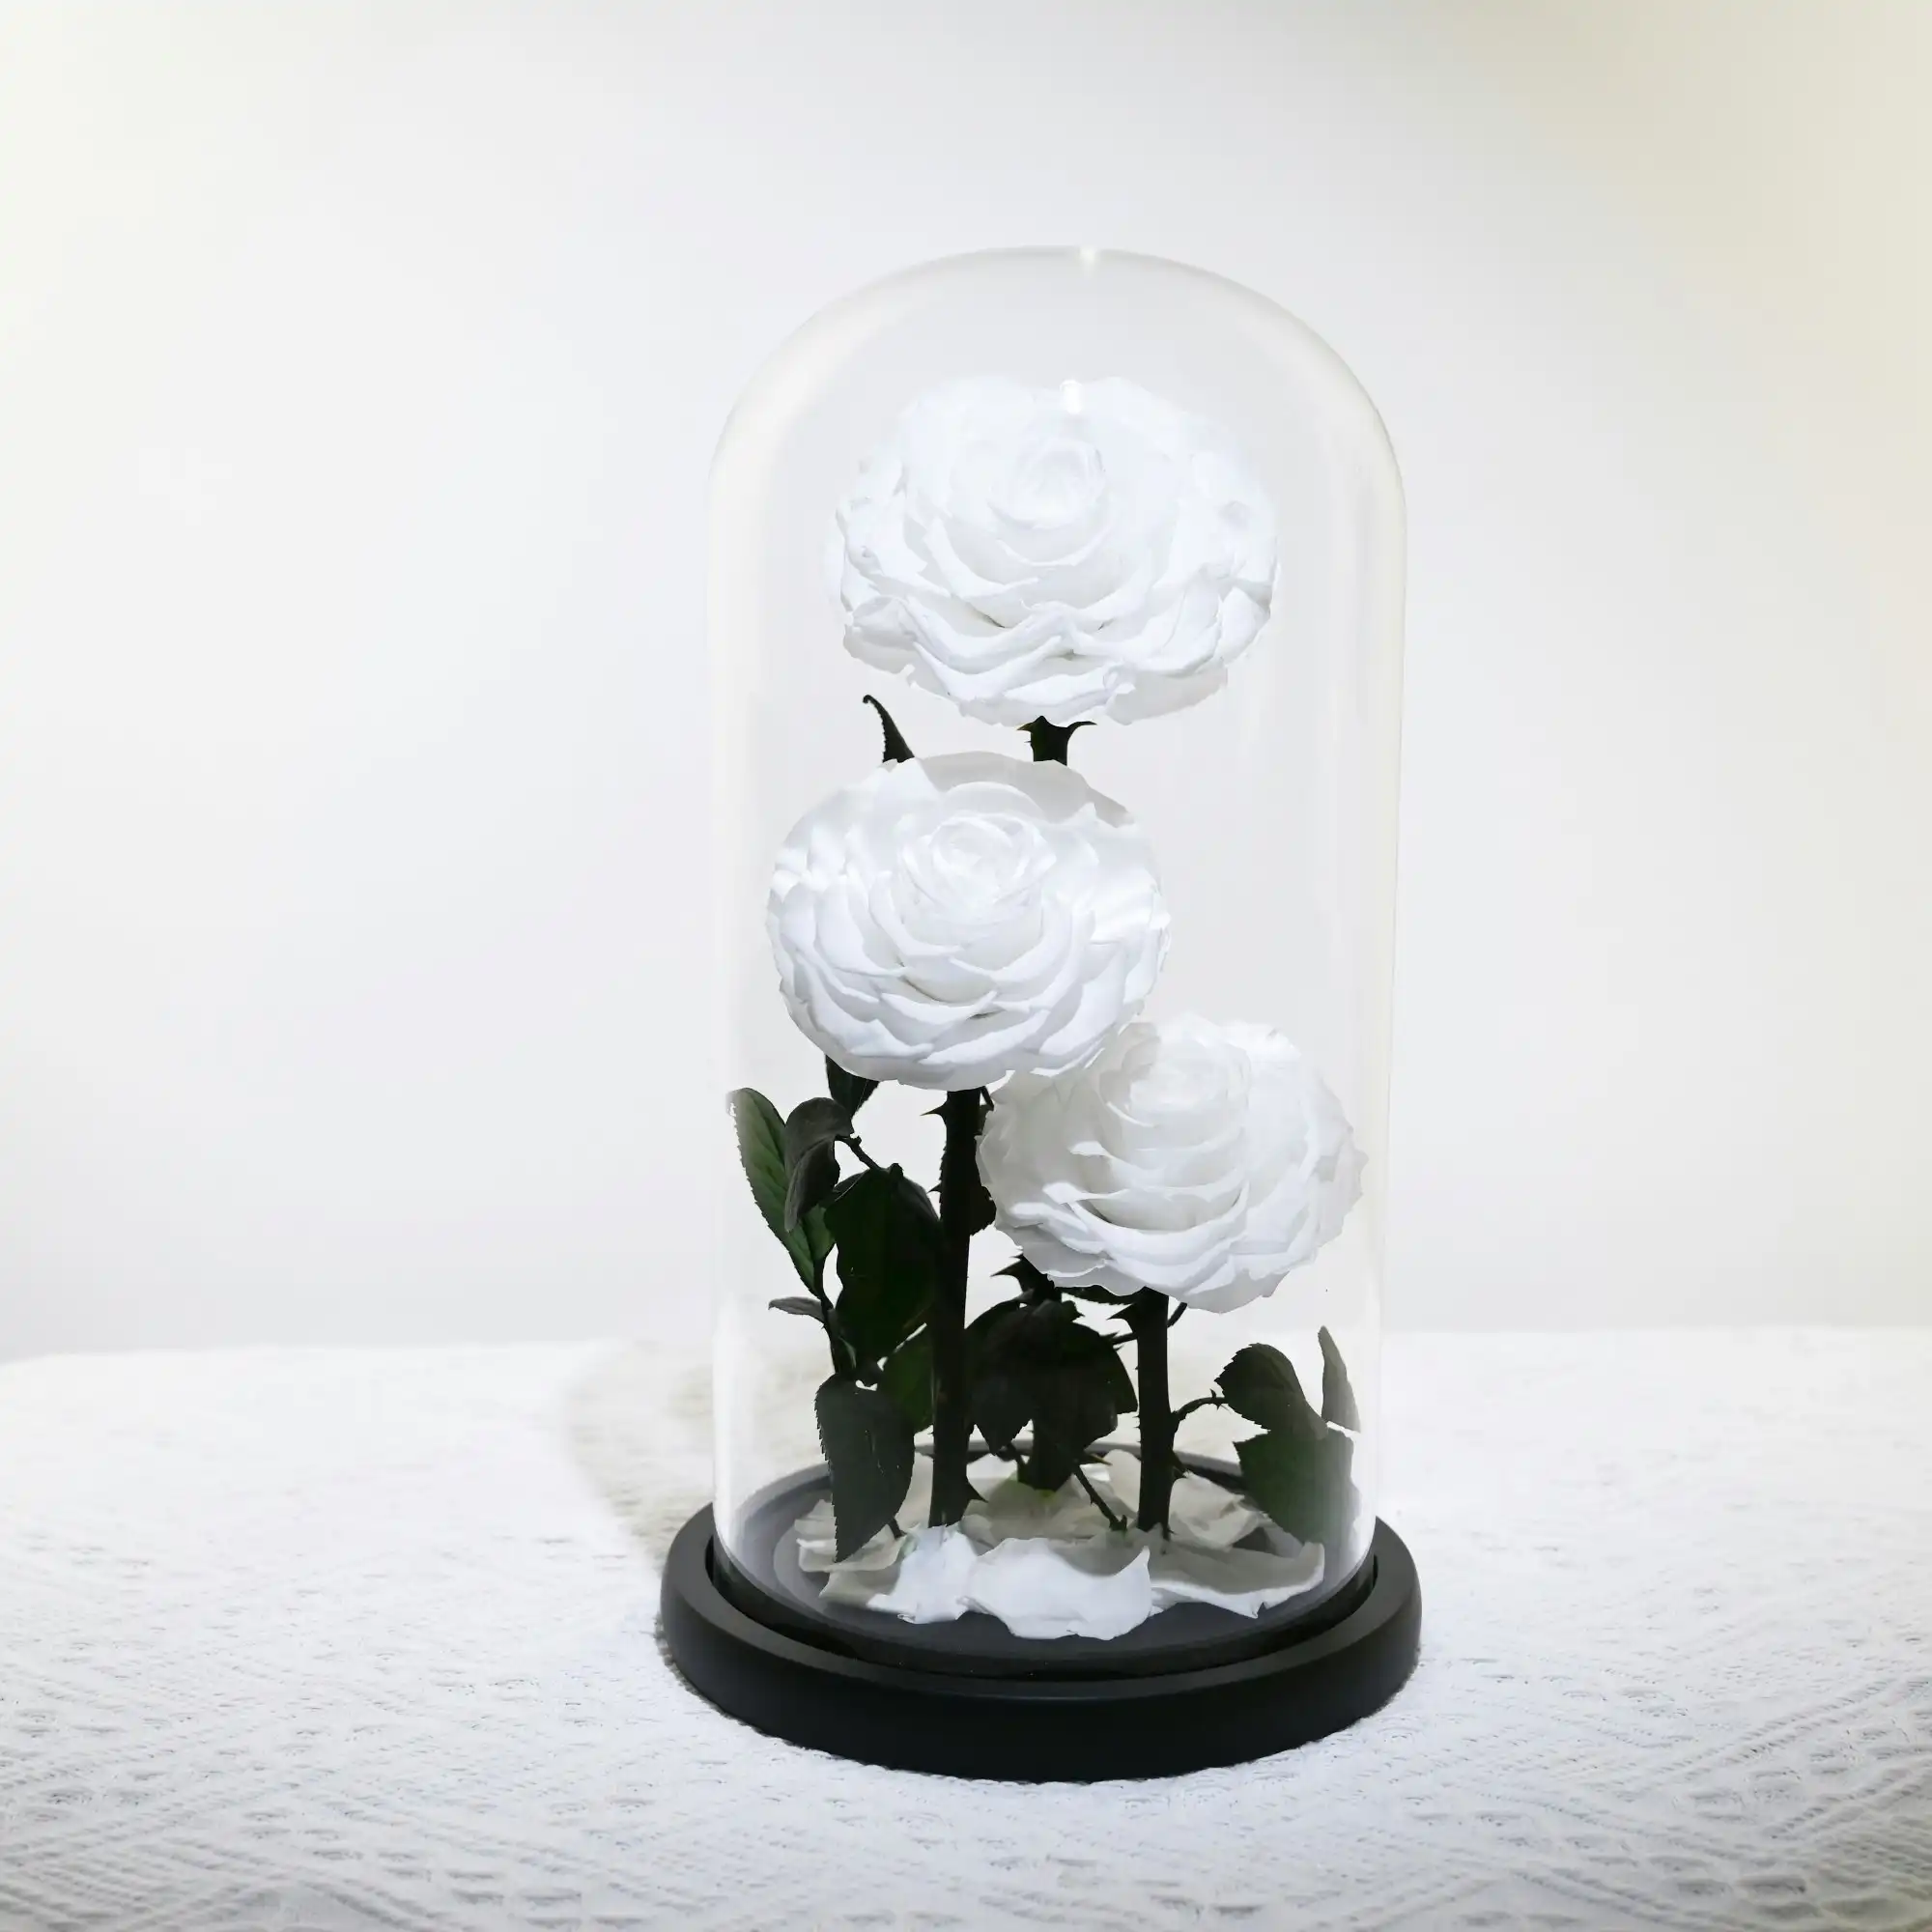 Vistara Timeless Rose - Natural 30cm 3 White Preserved Roses